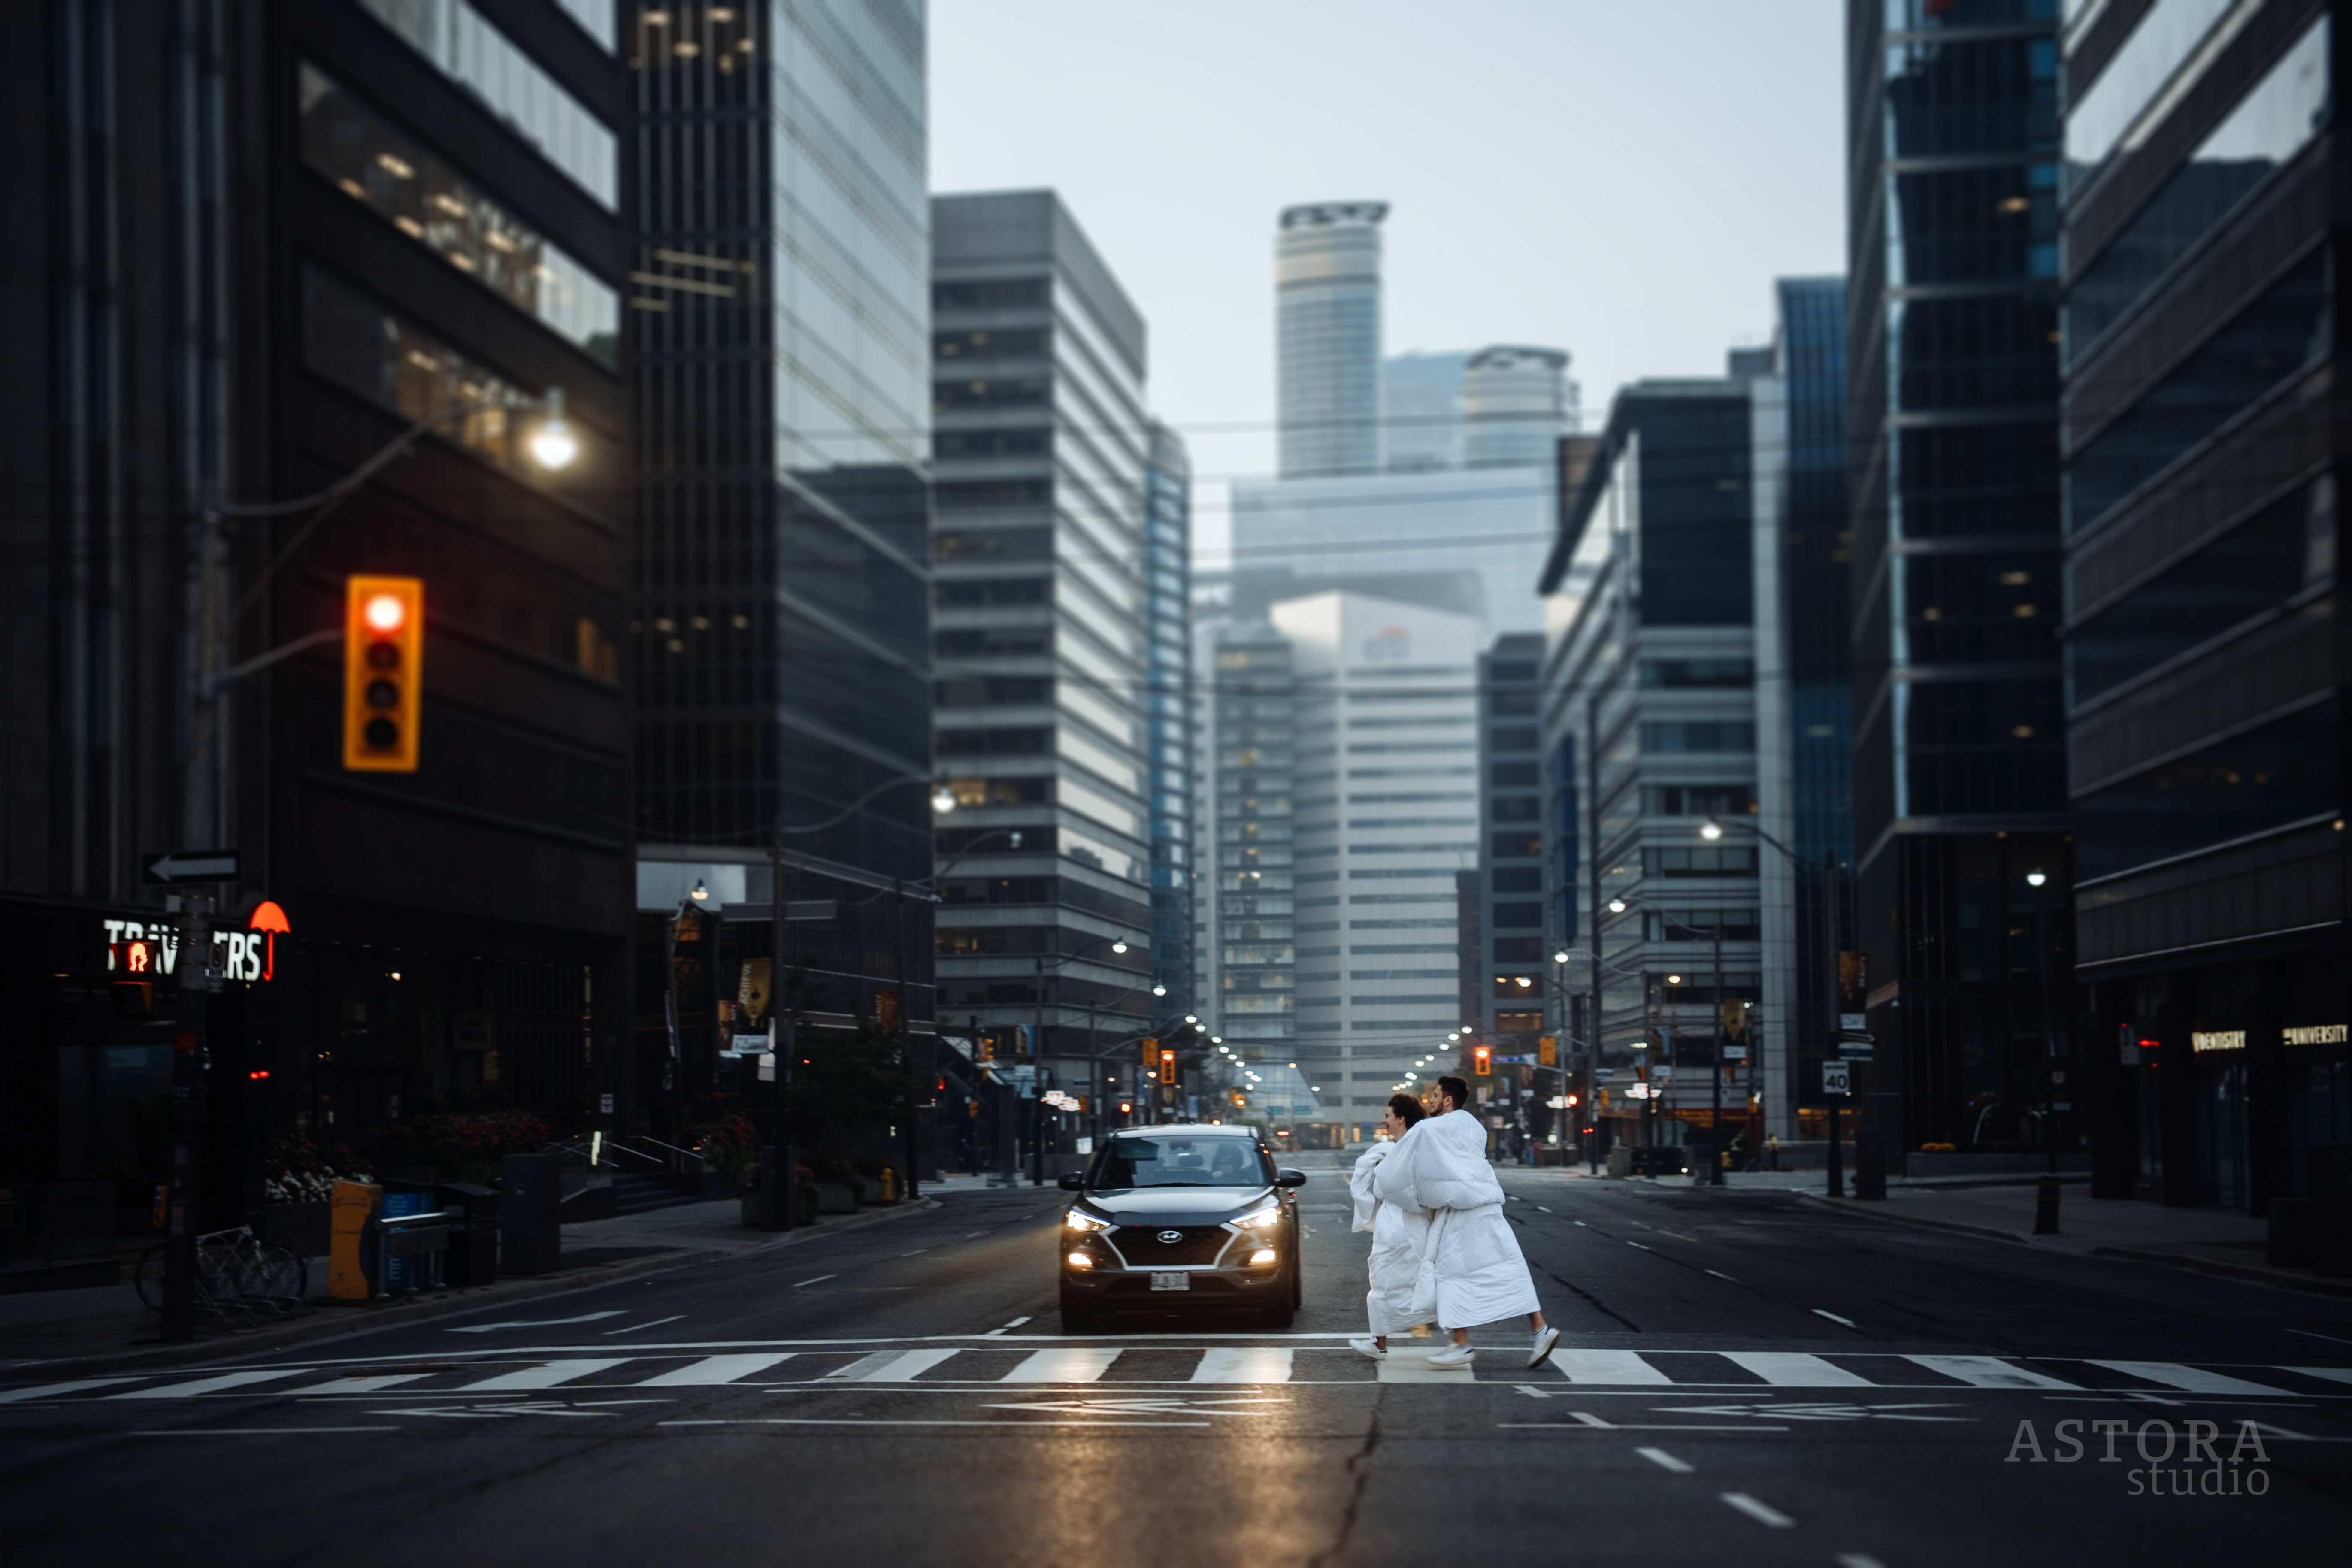 unusual unique engagement photoshoot in Toronto